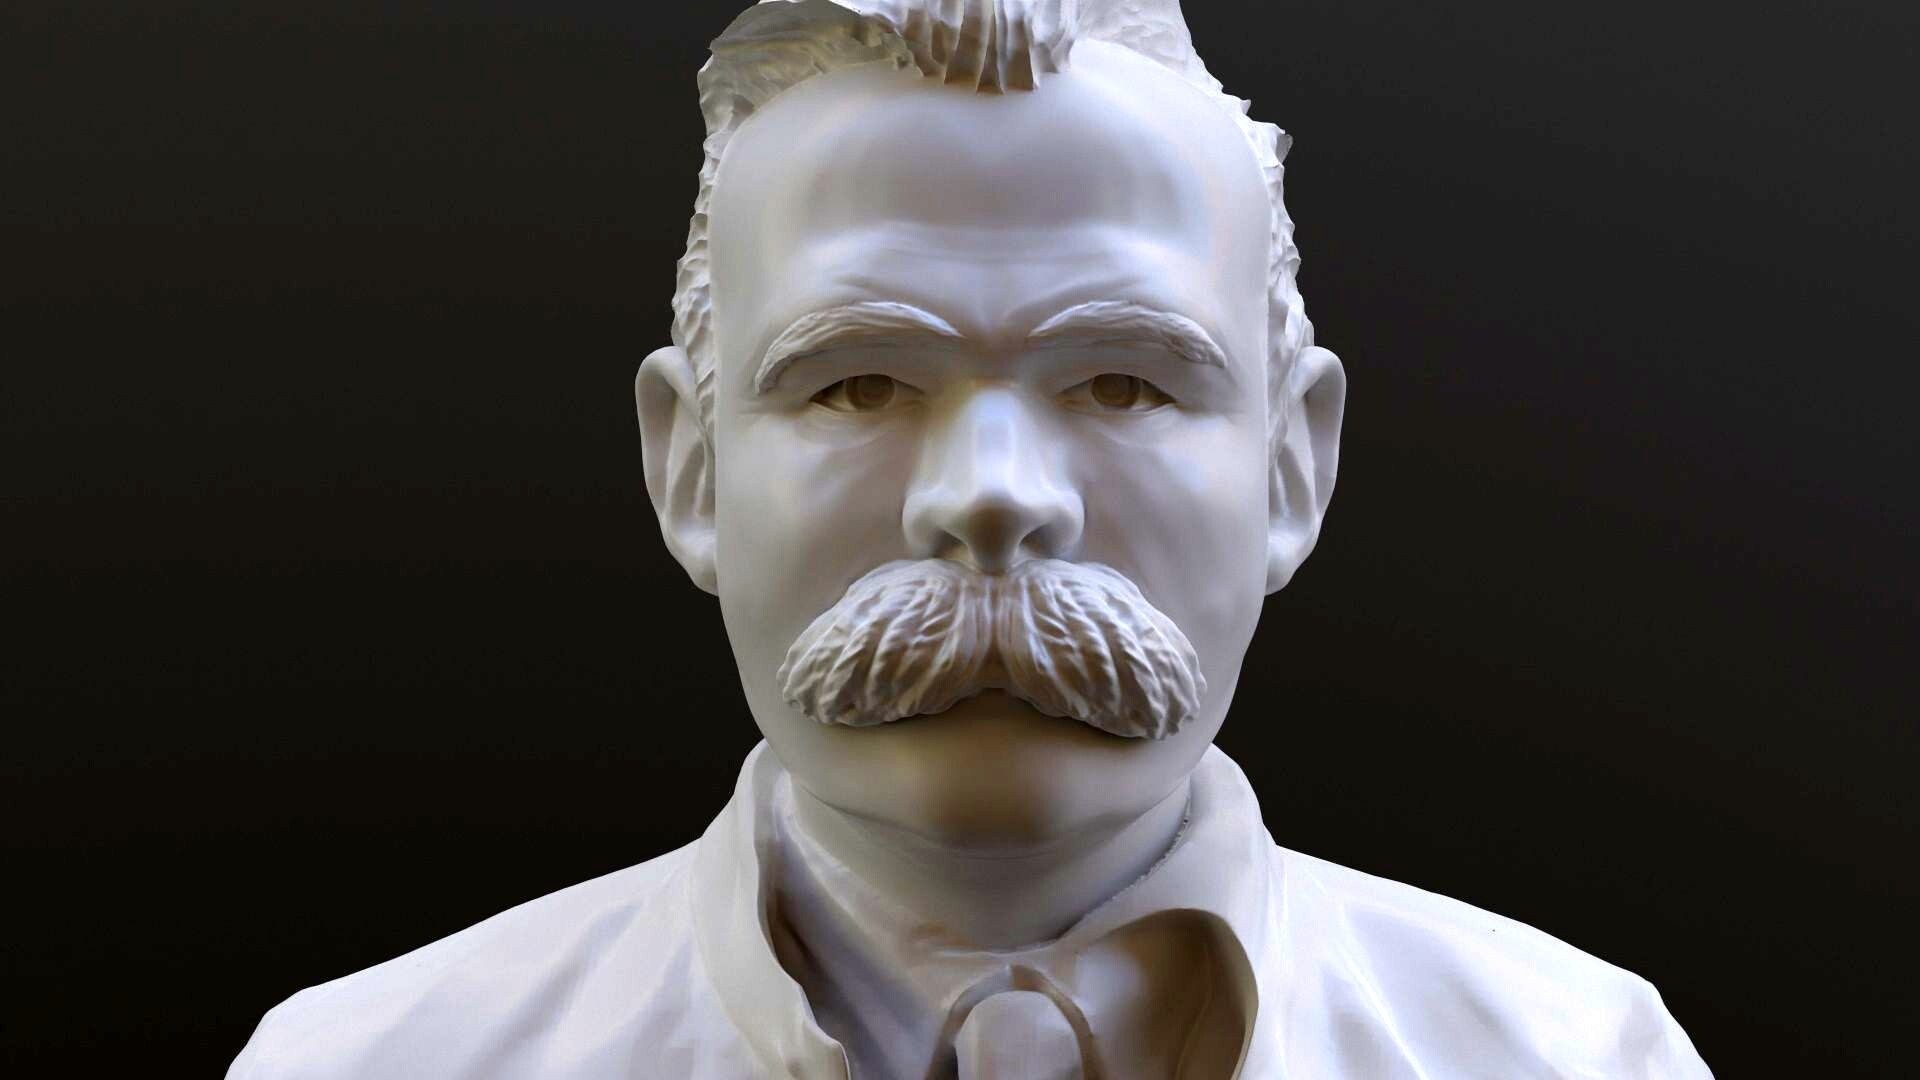 Artstation, Friedrich Nietzsche bust, Printable artwork, Nietzsche's sculpture, 1920x1080 Full HD Desktop